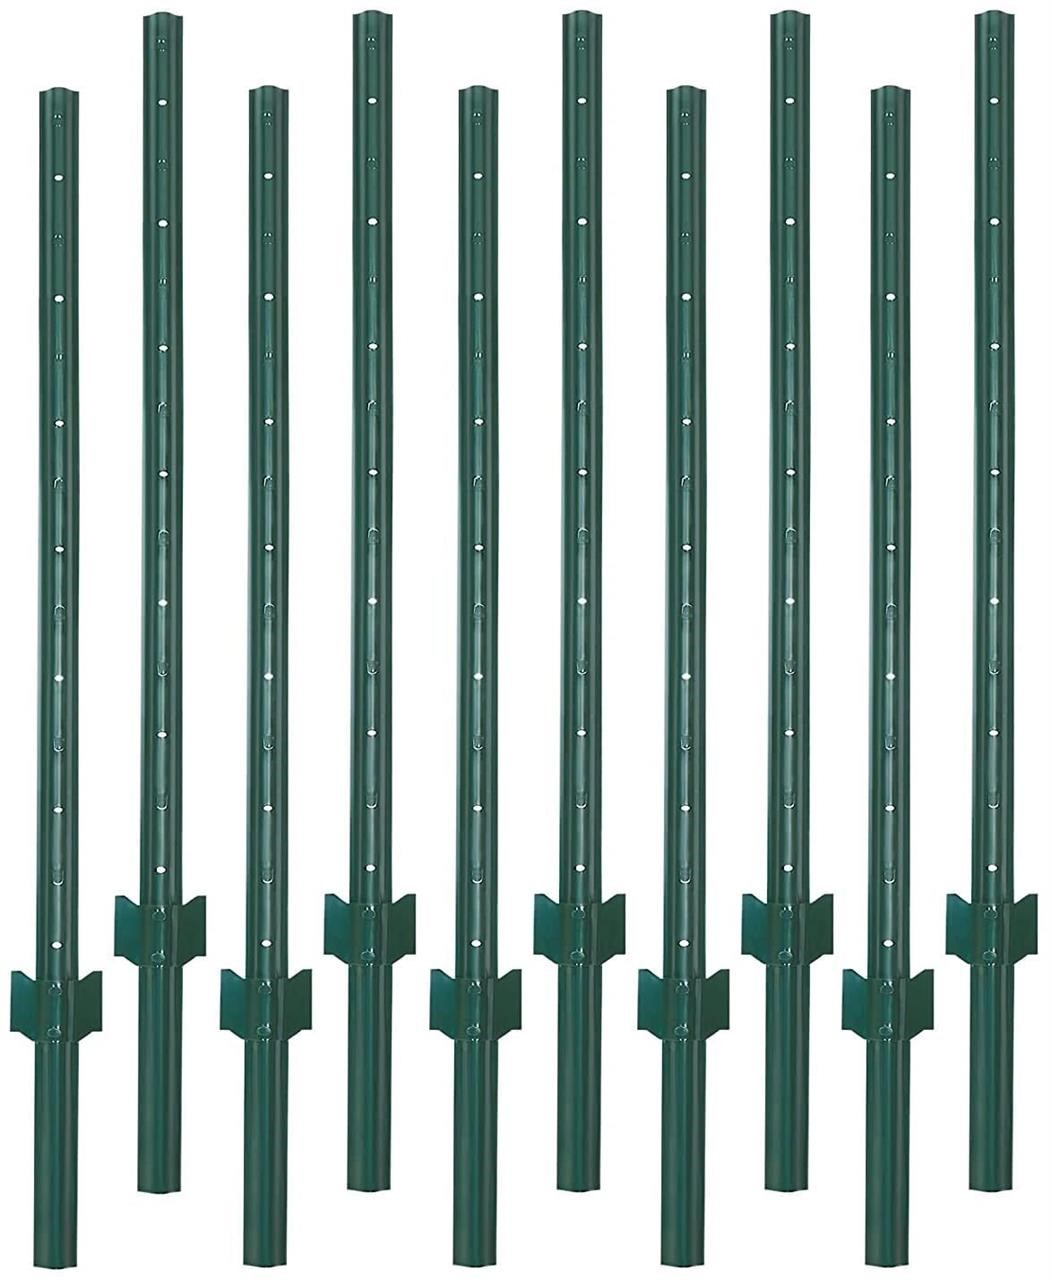 VASGOR 6 Feet Sturdy Duty Metal Fence Post –